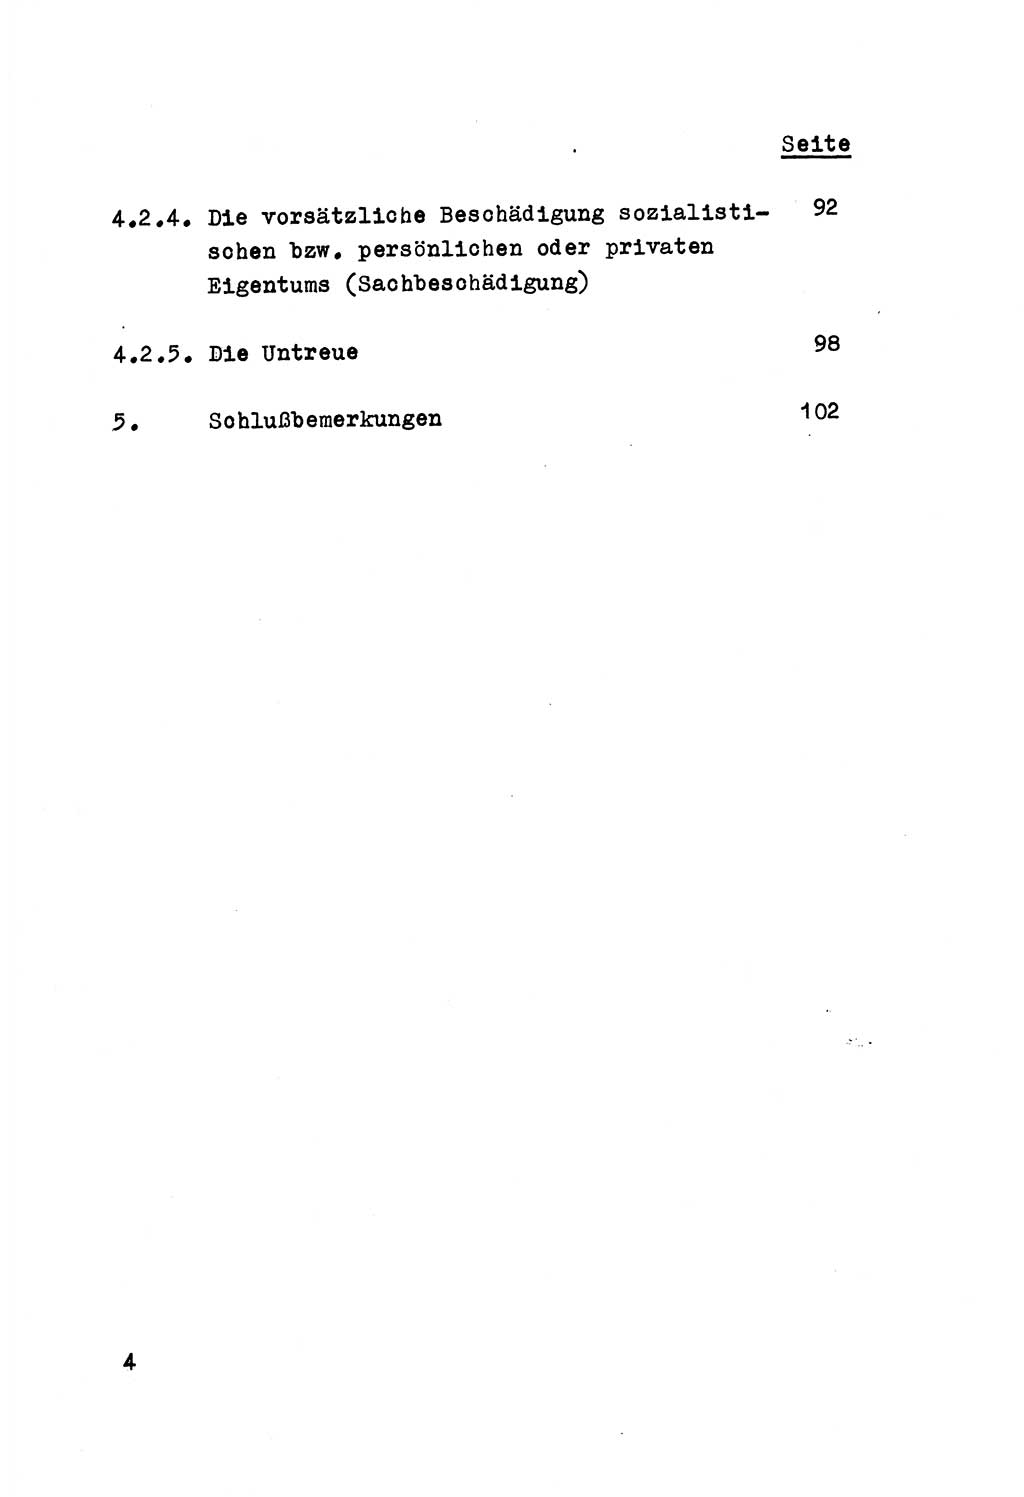 Strafrecht der DDR (Deutsche Demokratische Republik), Besonderer Teil, Lehrmaterial, Heft 5 1970, Seite 4 (Strafr. DDR BT Lehrmat. H. 5 1970, S. 4)